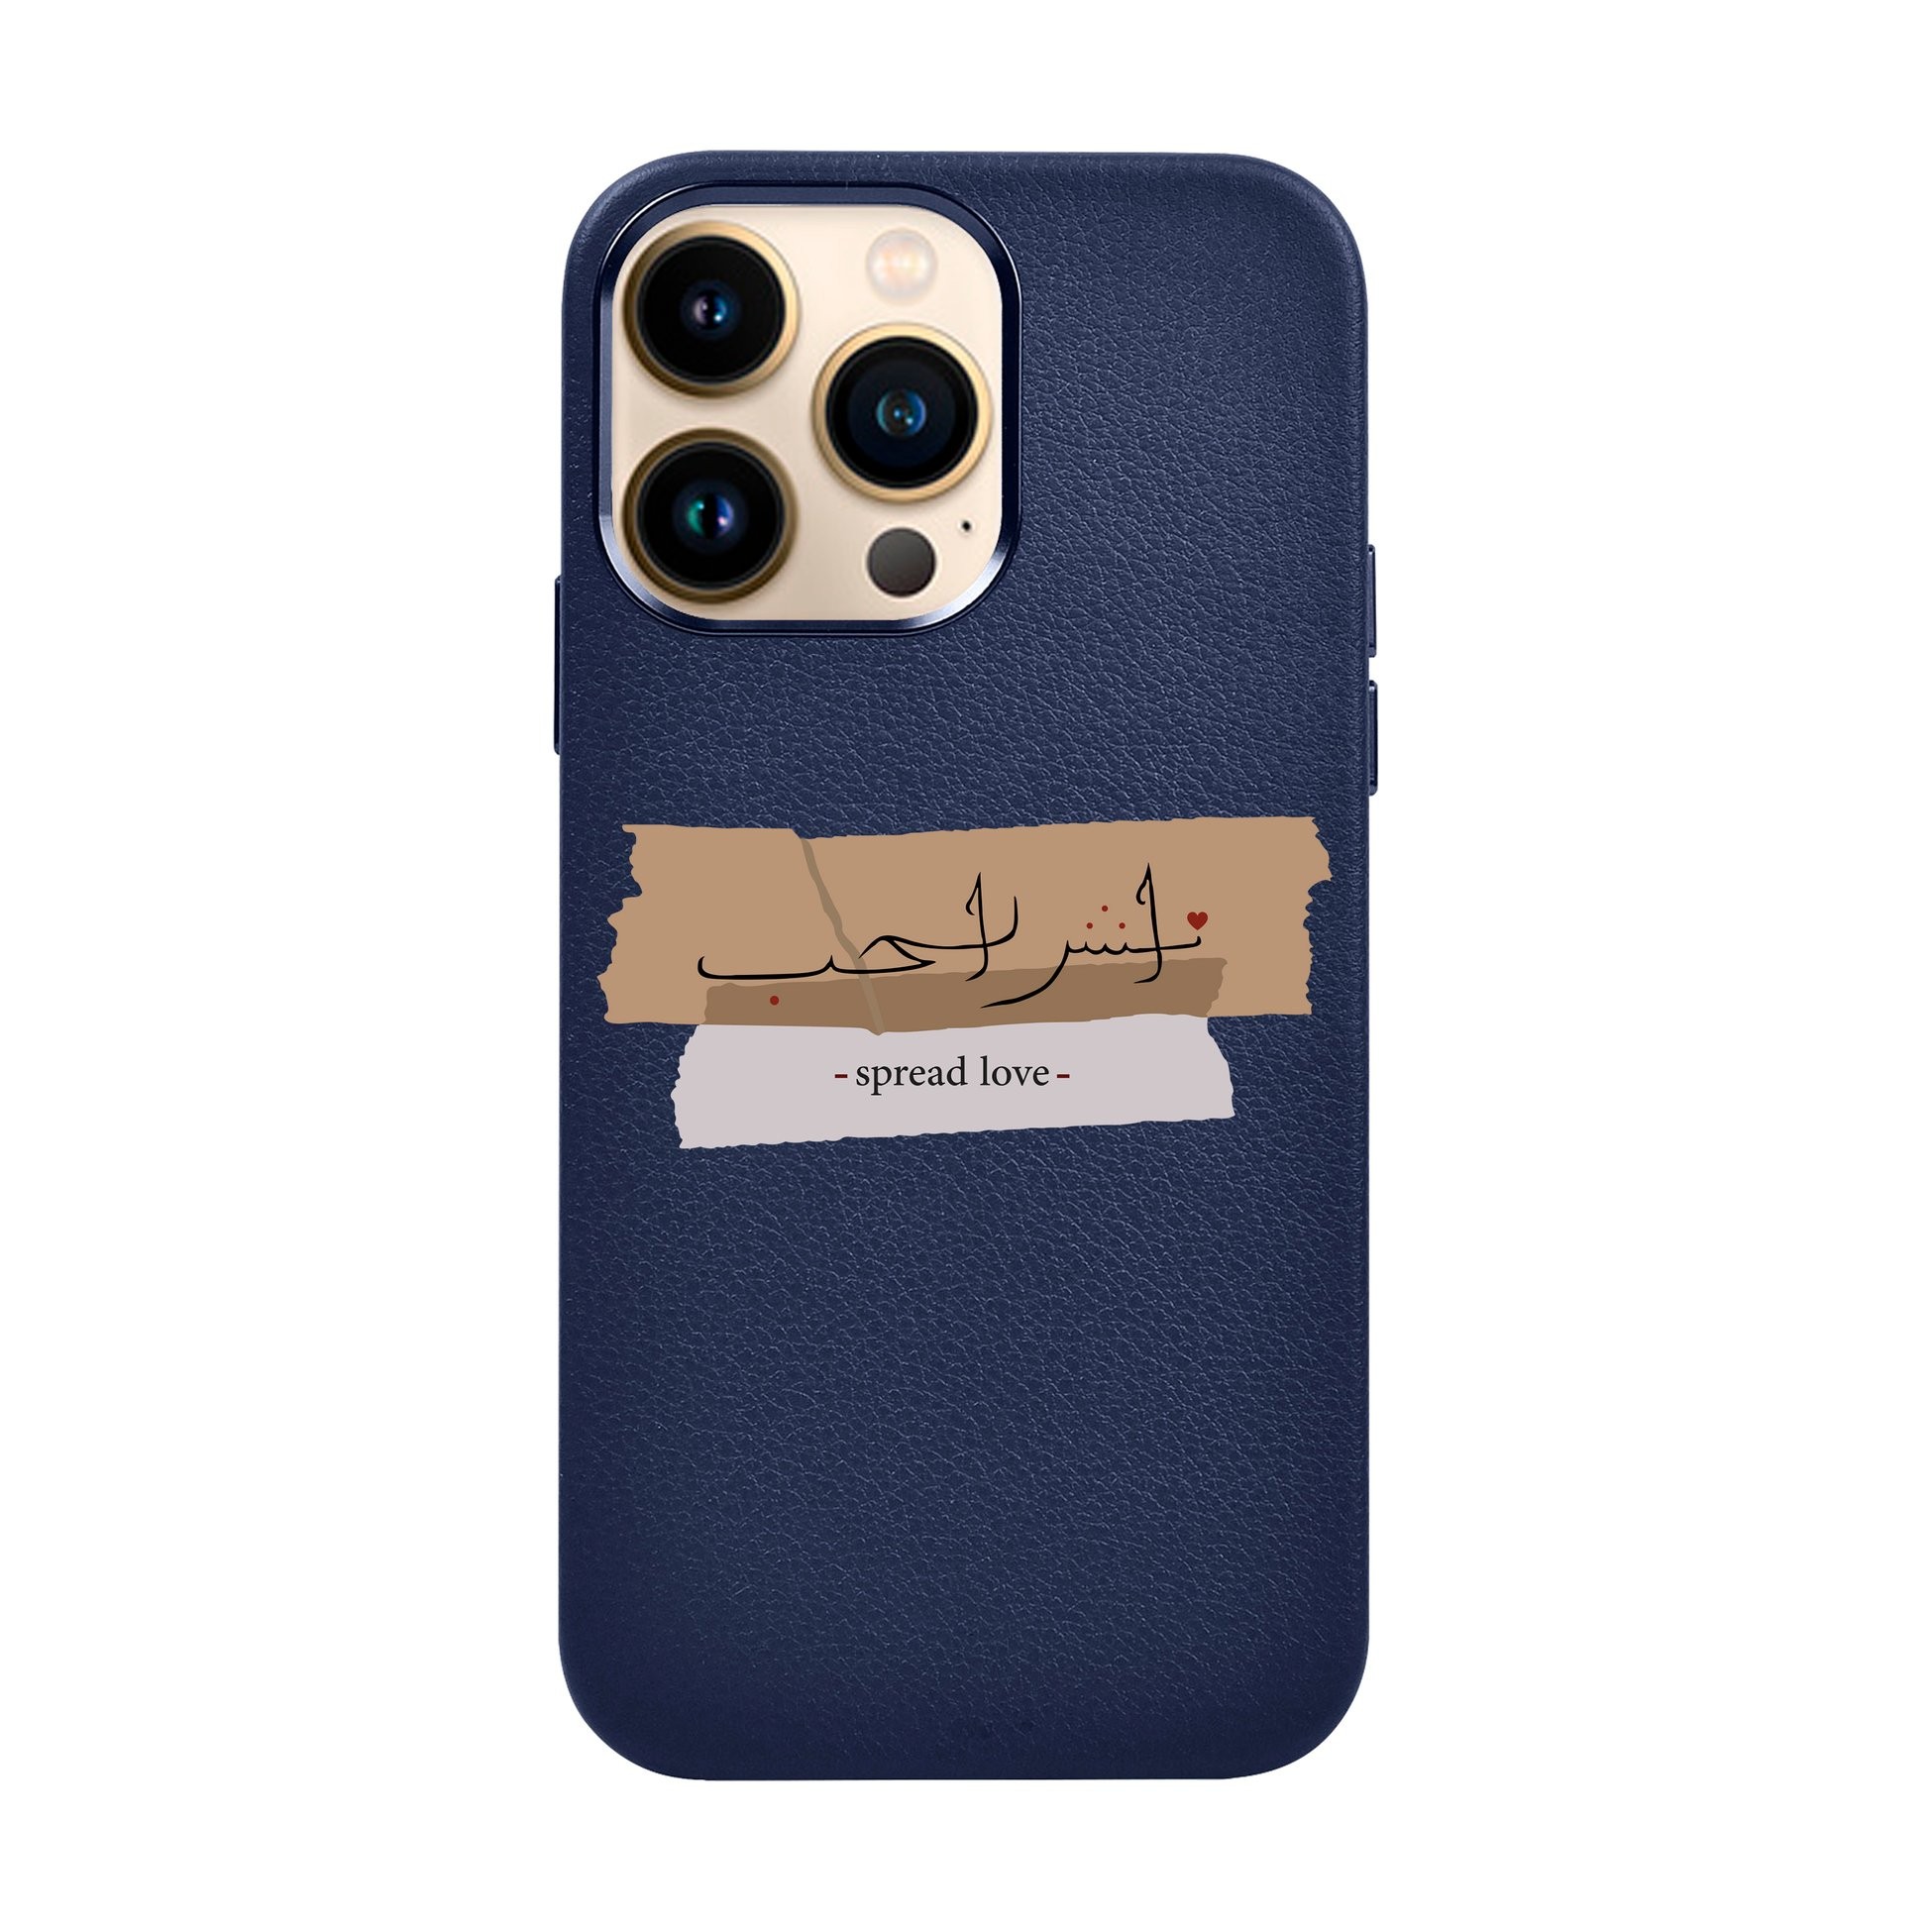 SPREAD LOVE-iPhone Top Grain Leather Kılıf